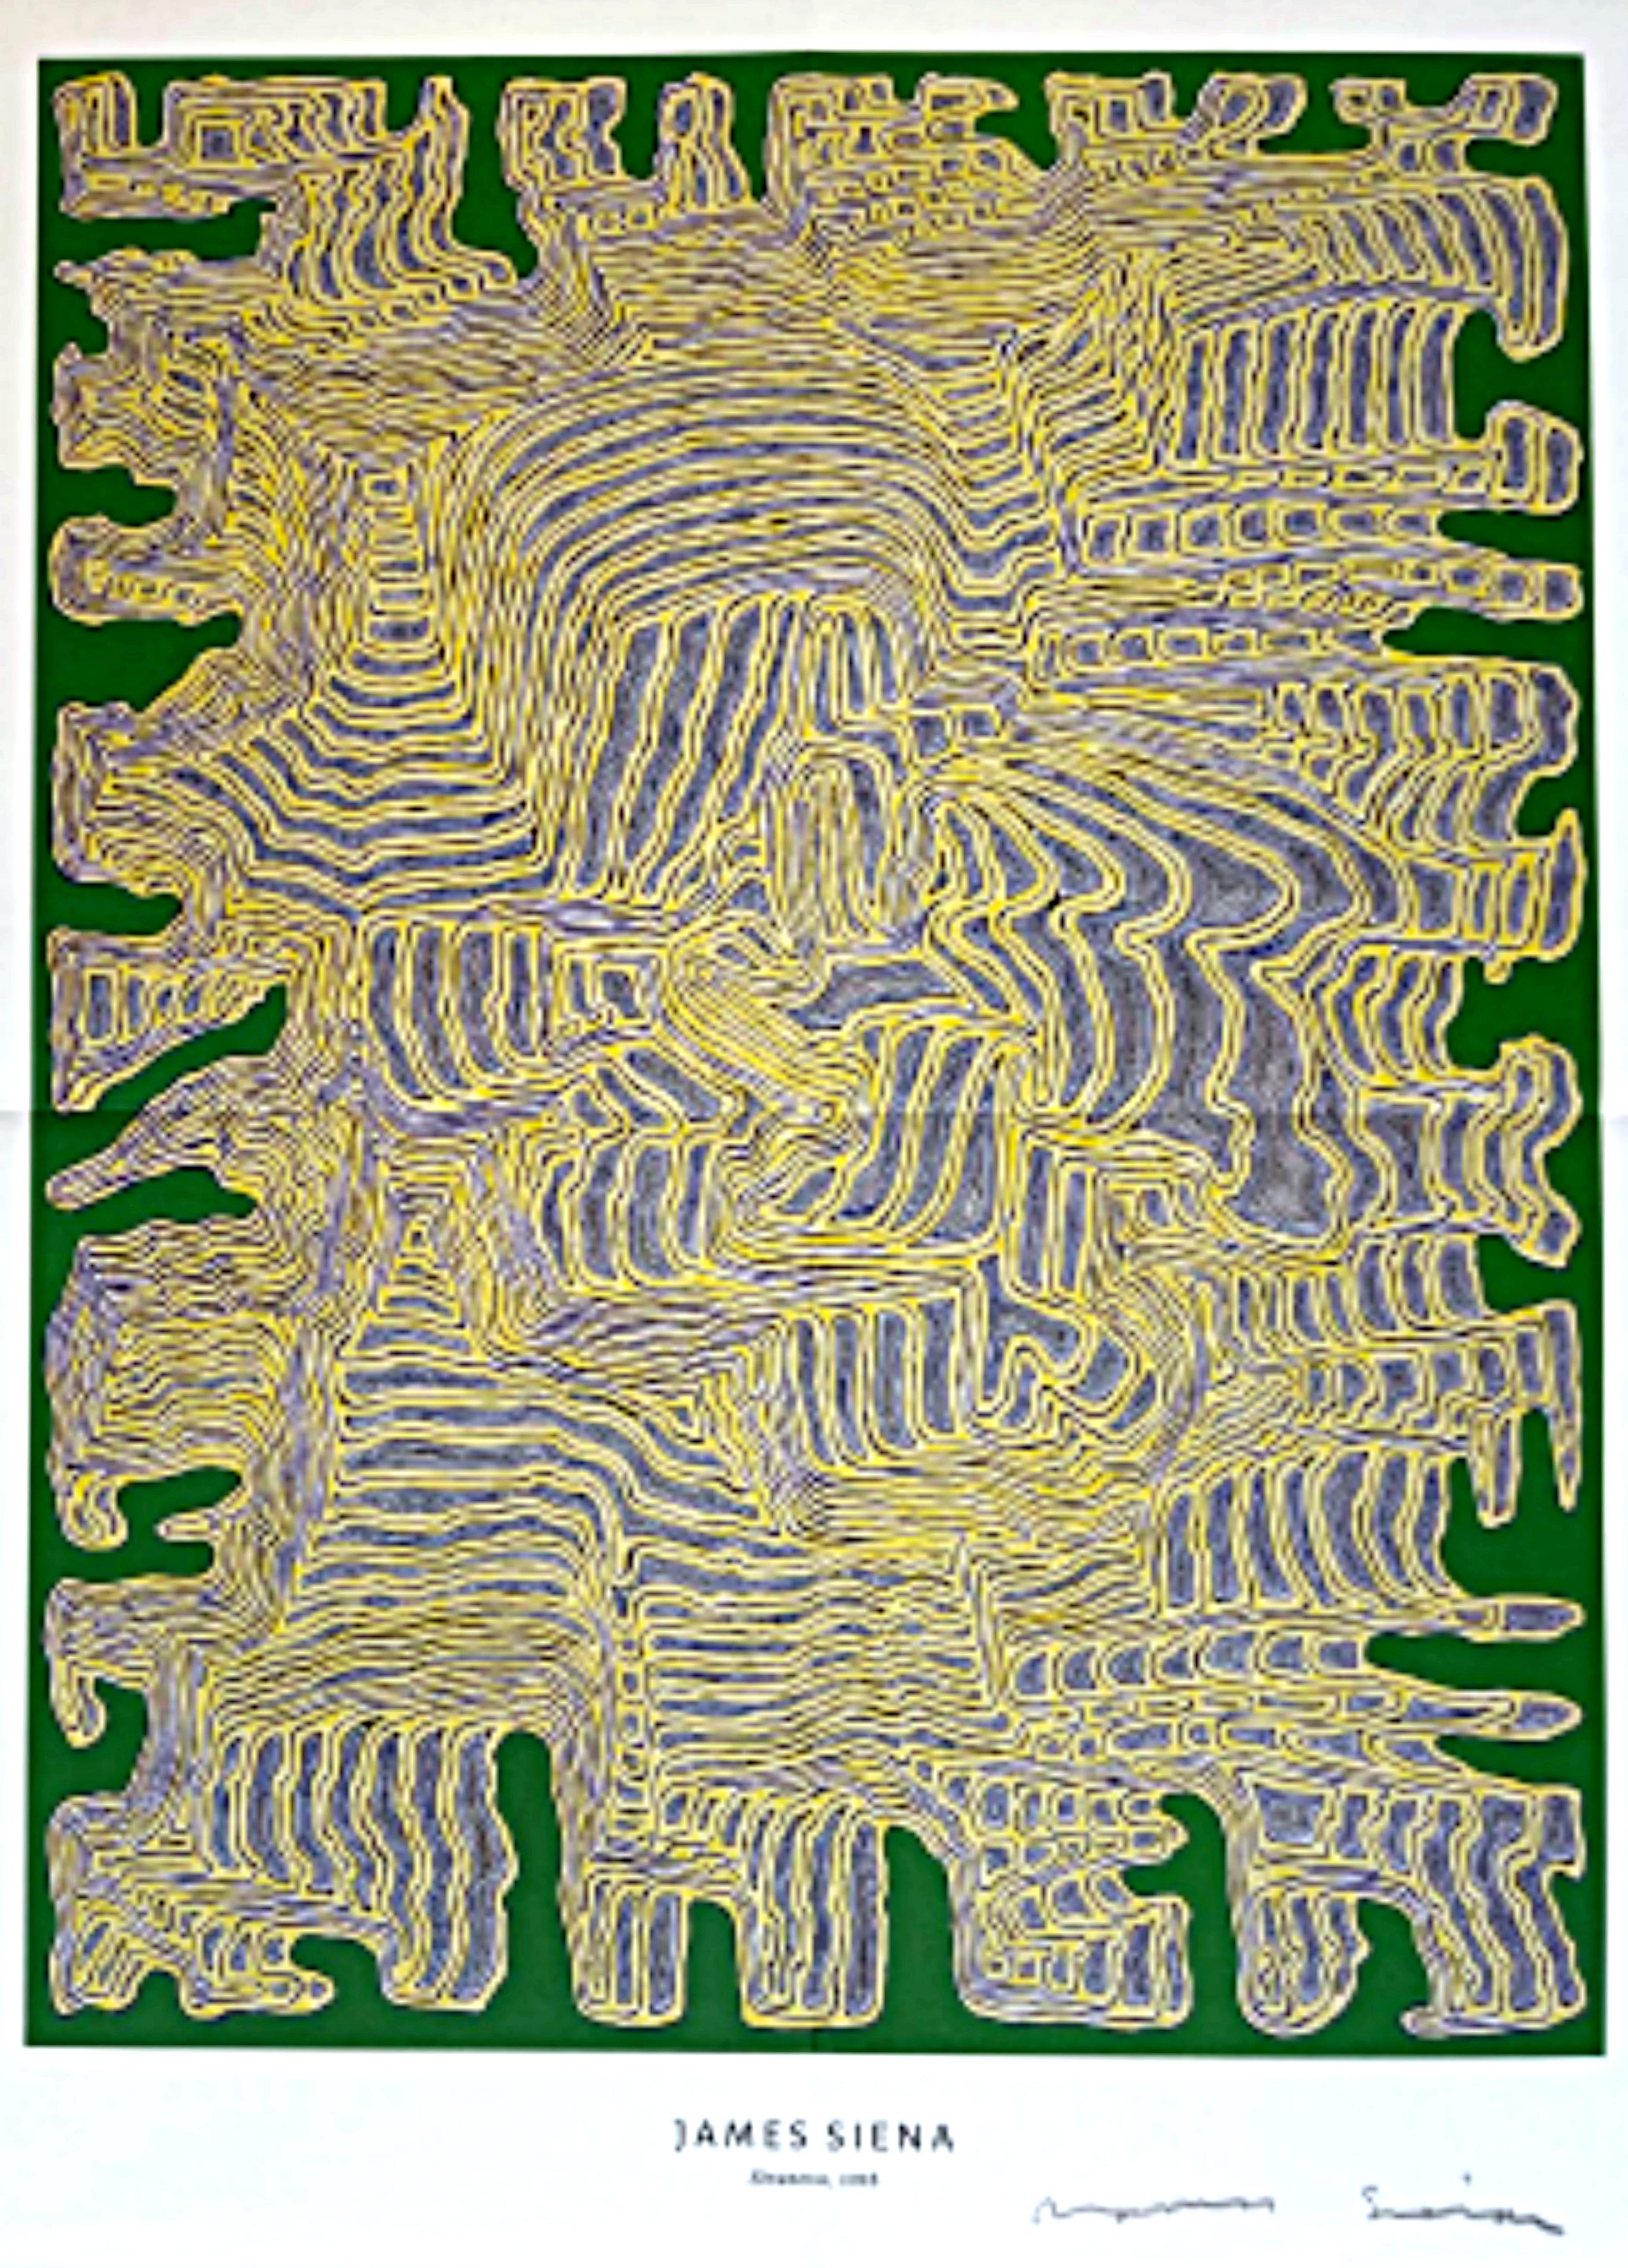 Affiche James SIena at PACE signée à la main par James Siena, abstraction linéaire complexe